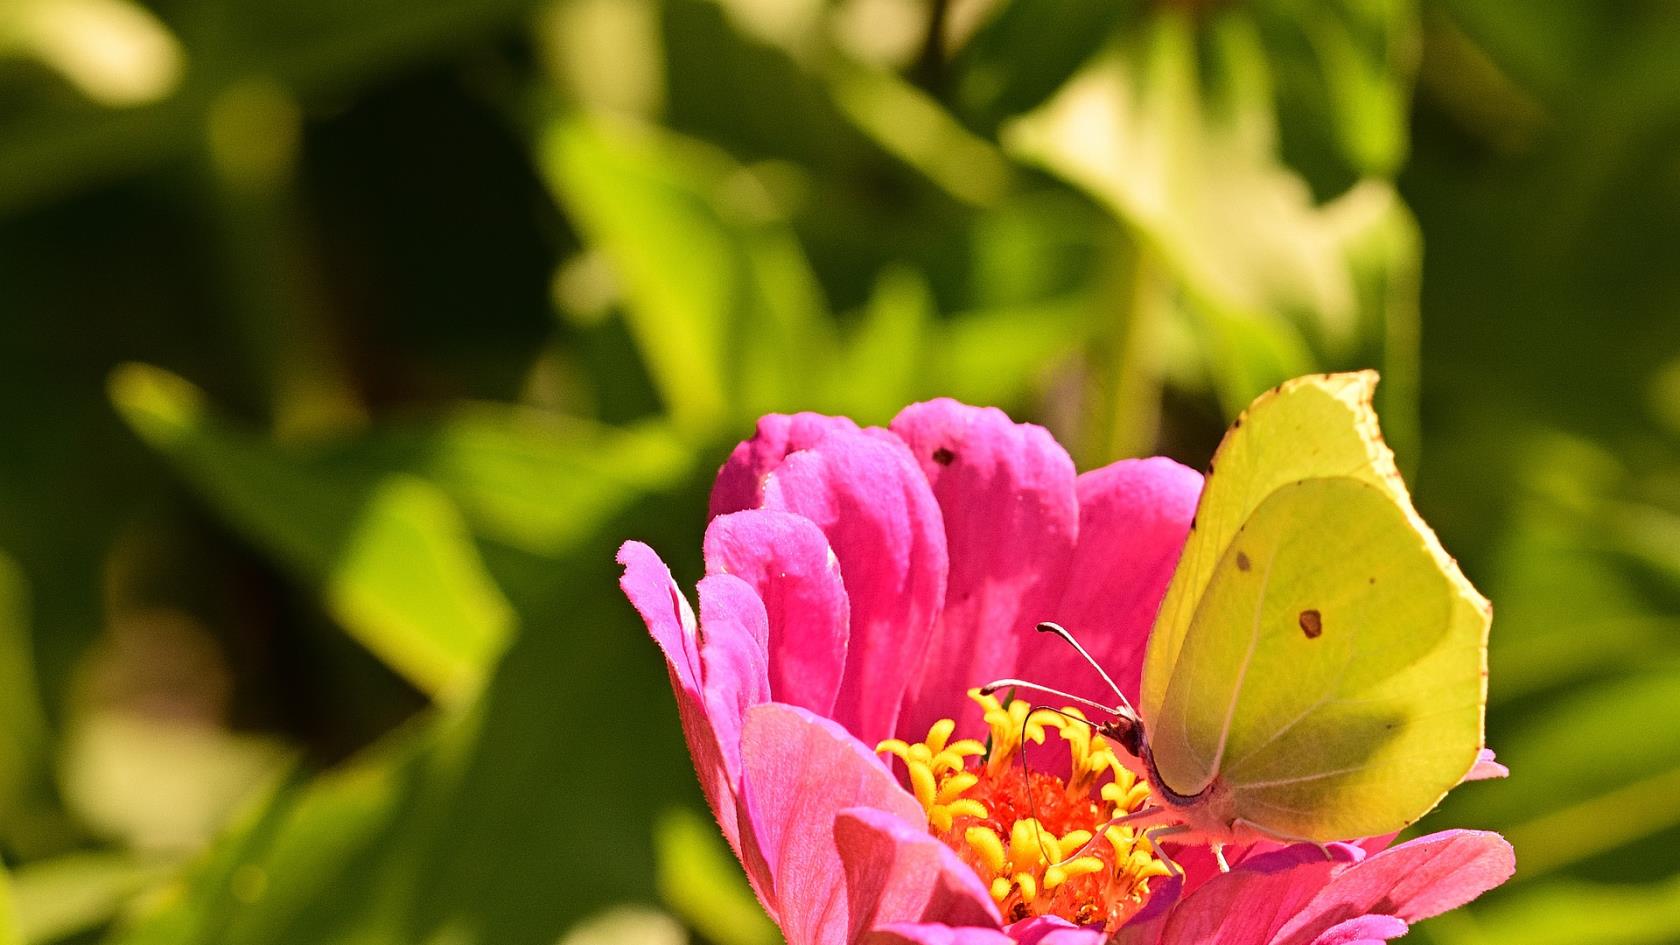 Närbild på gul/grön fjäril som sitter på en rosa blomma.